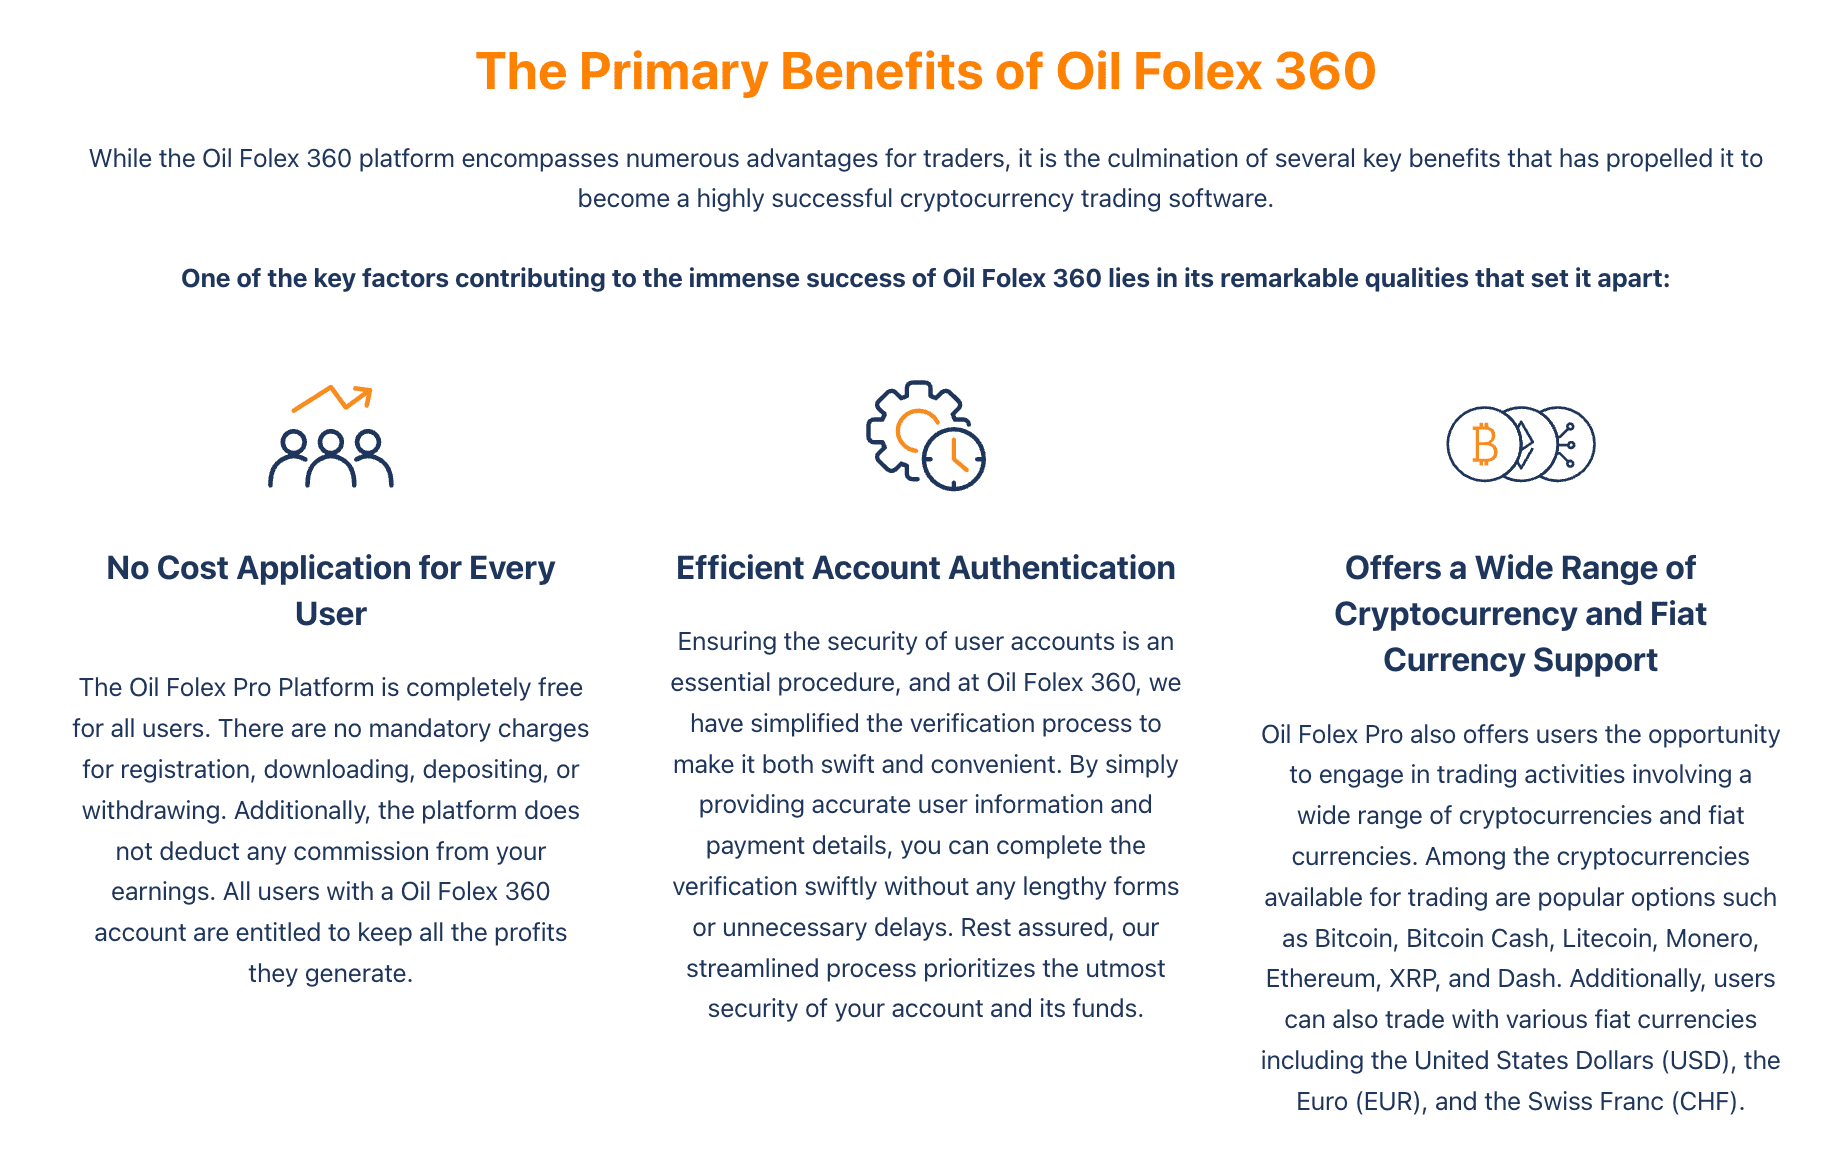 Hlavní výhody Oil Folex 360